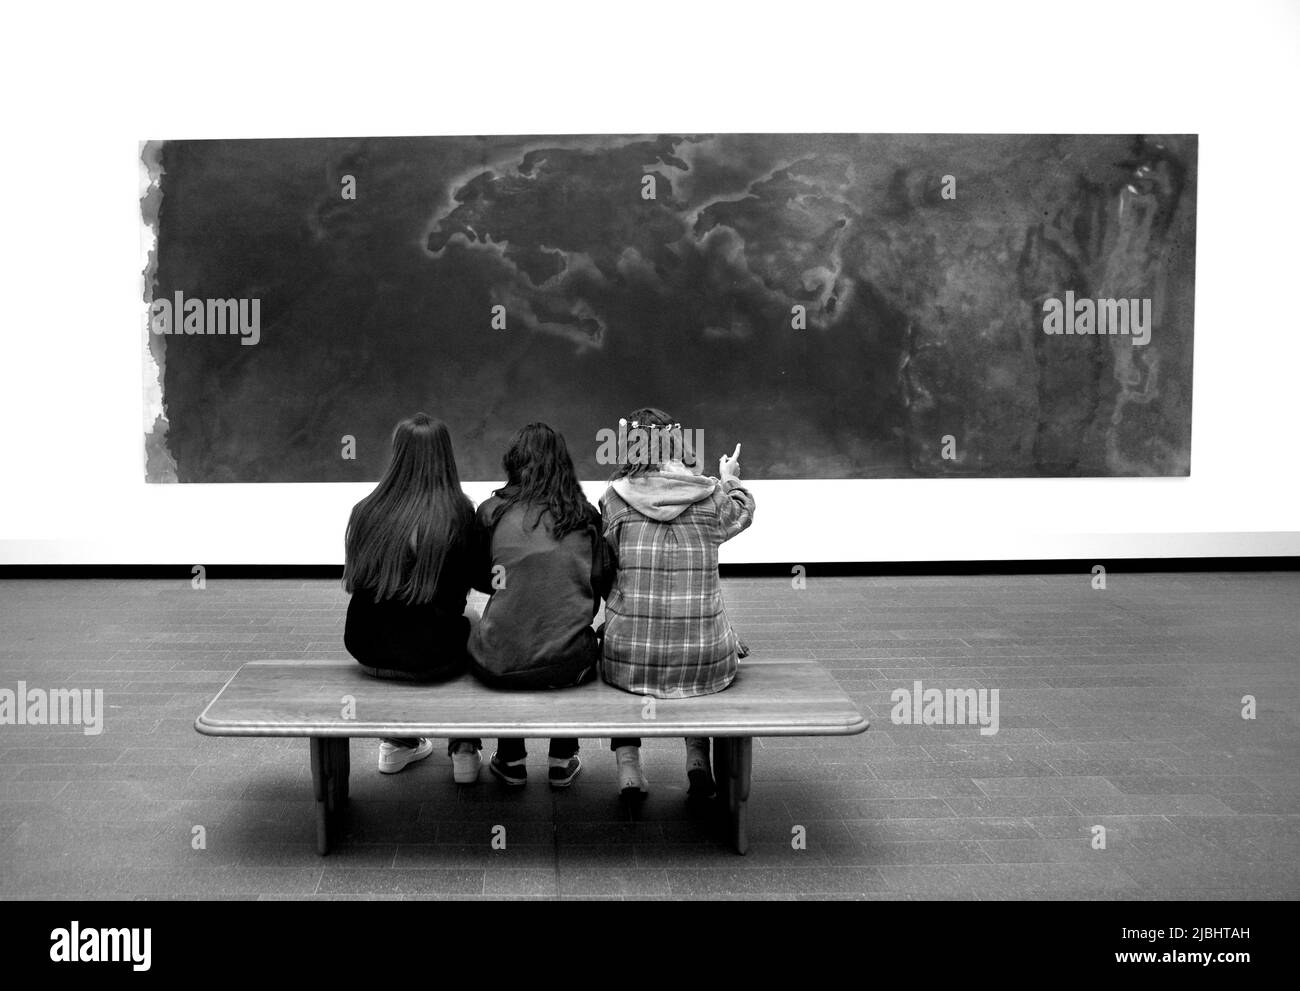 Trois jeunes visiteurs du musée admirent un tableau de Frank Bowling intitulé « penumbra » au M.H. de Young Memorial Museum de San Francisco, Californie. Banque D'Images